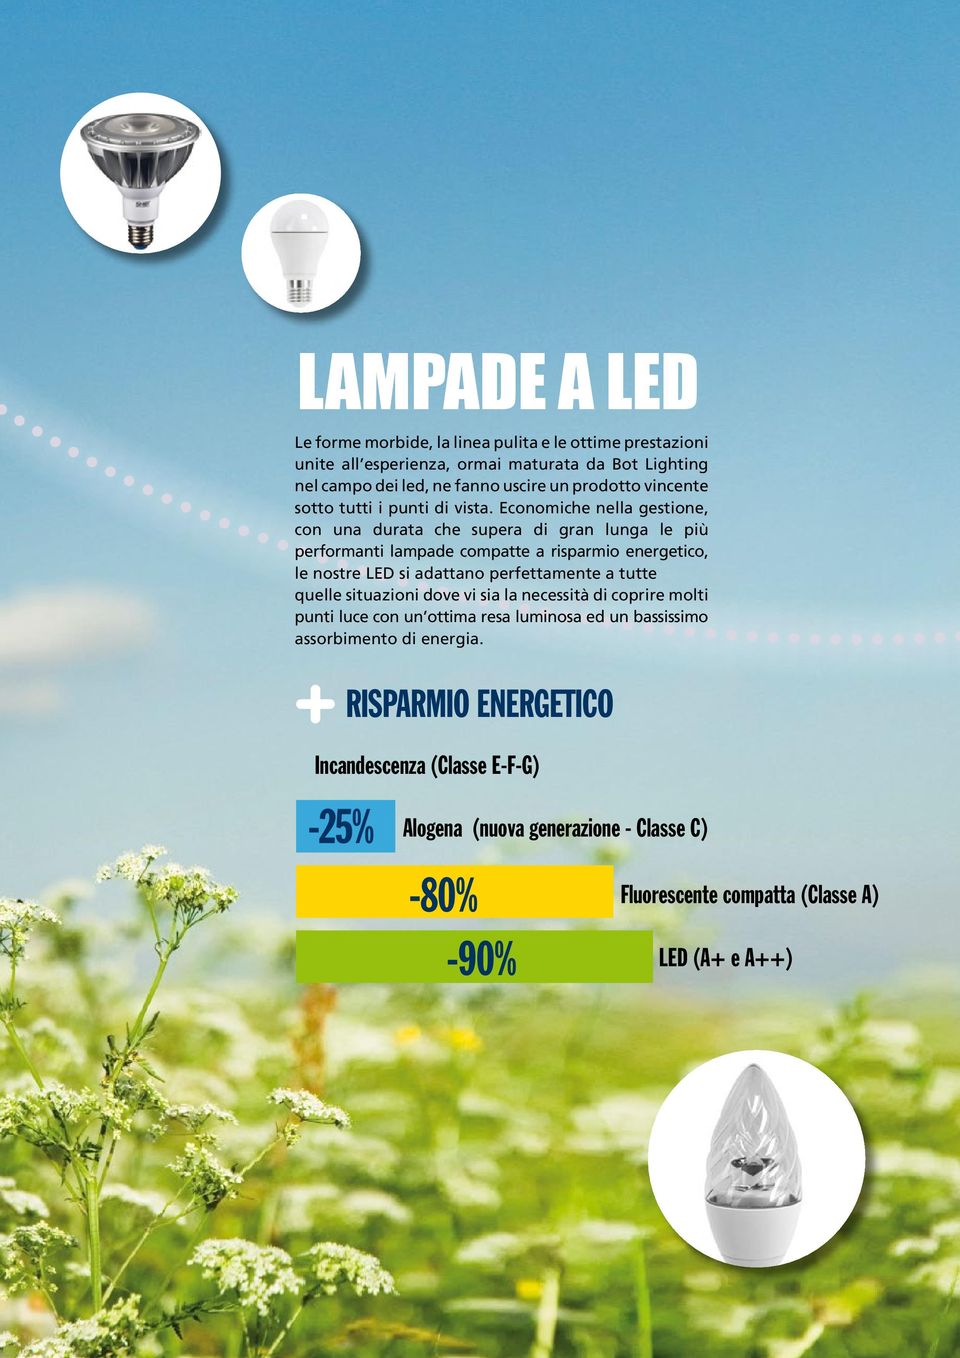 Economiche nella gestione, con una durata che supera di gran lunga le più performanti lampade compatte a risparmio energetico, le nostre LED si adattano perfettamente